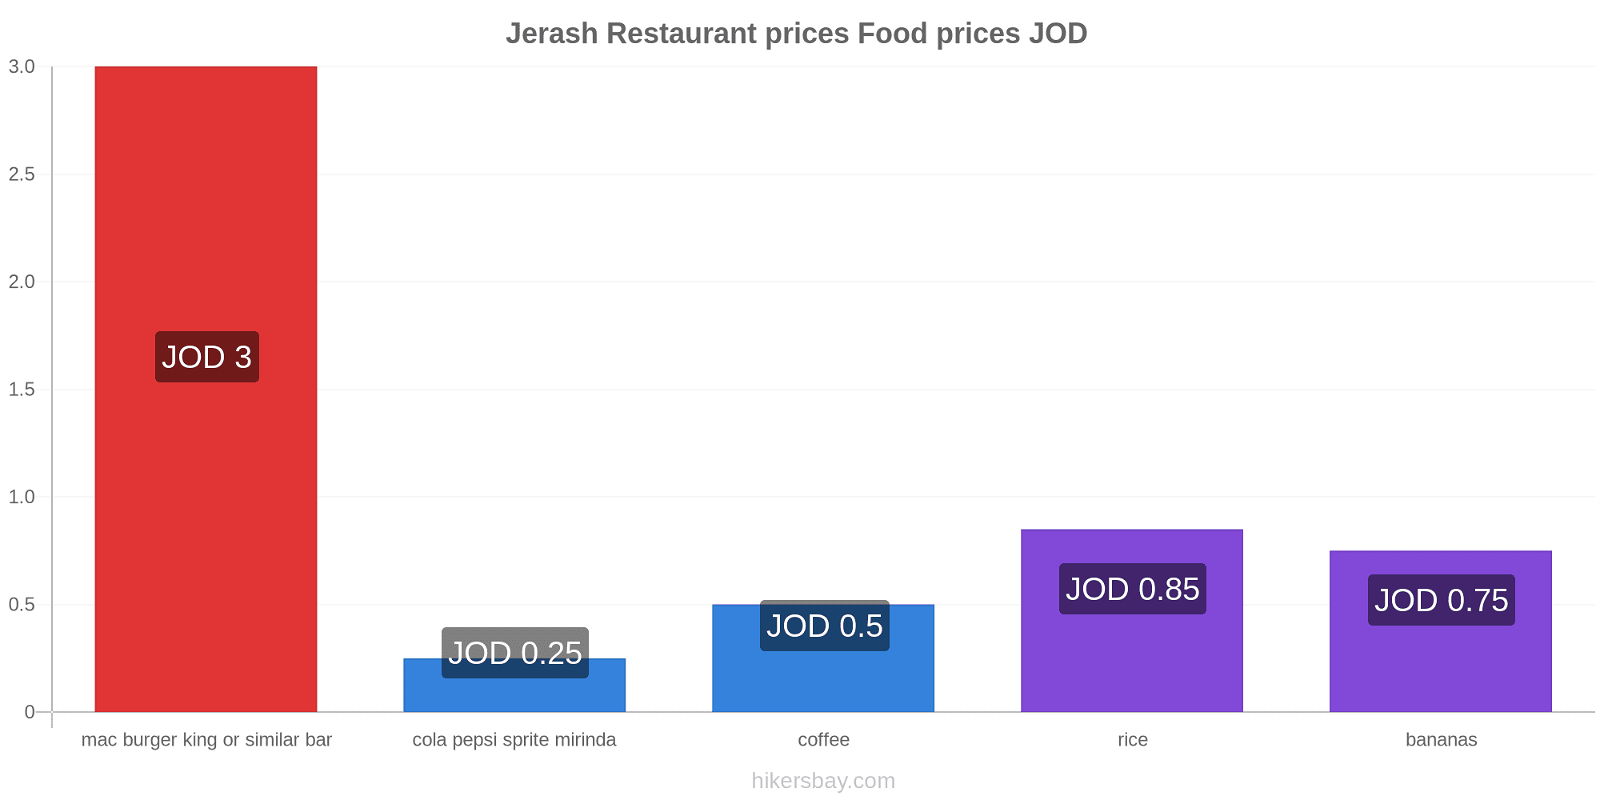 Jerash price changes hikersbay.com